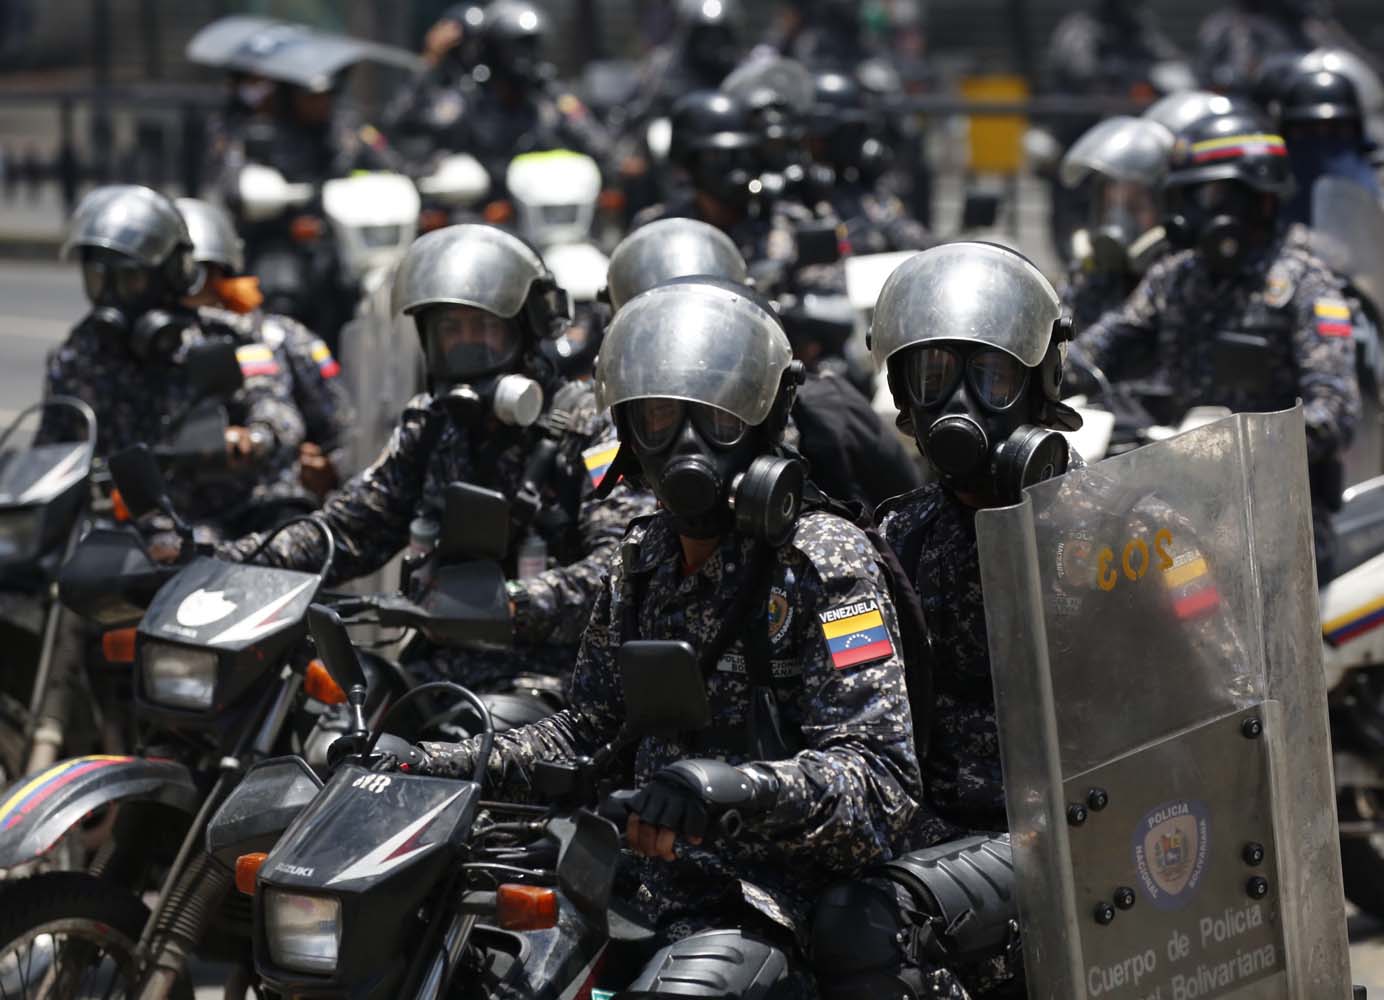 Diputados venezolanos apoyaron decisión de la CPI de continuar investigación sobre crímenes en Venezuela